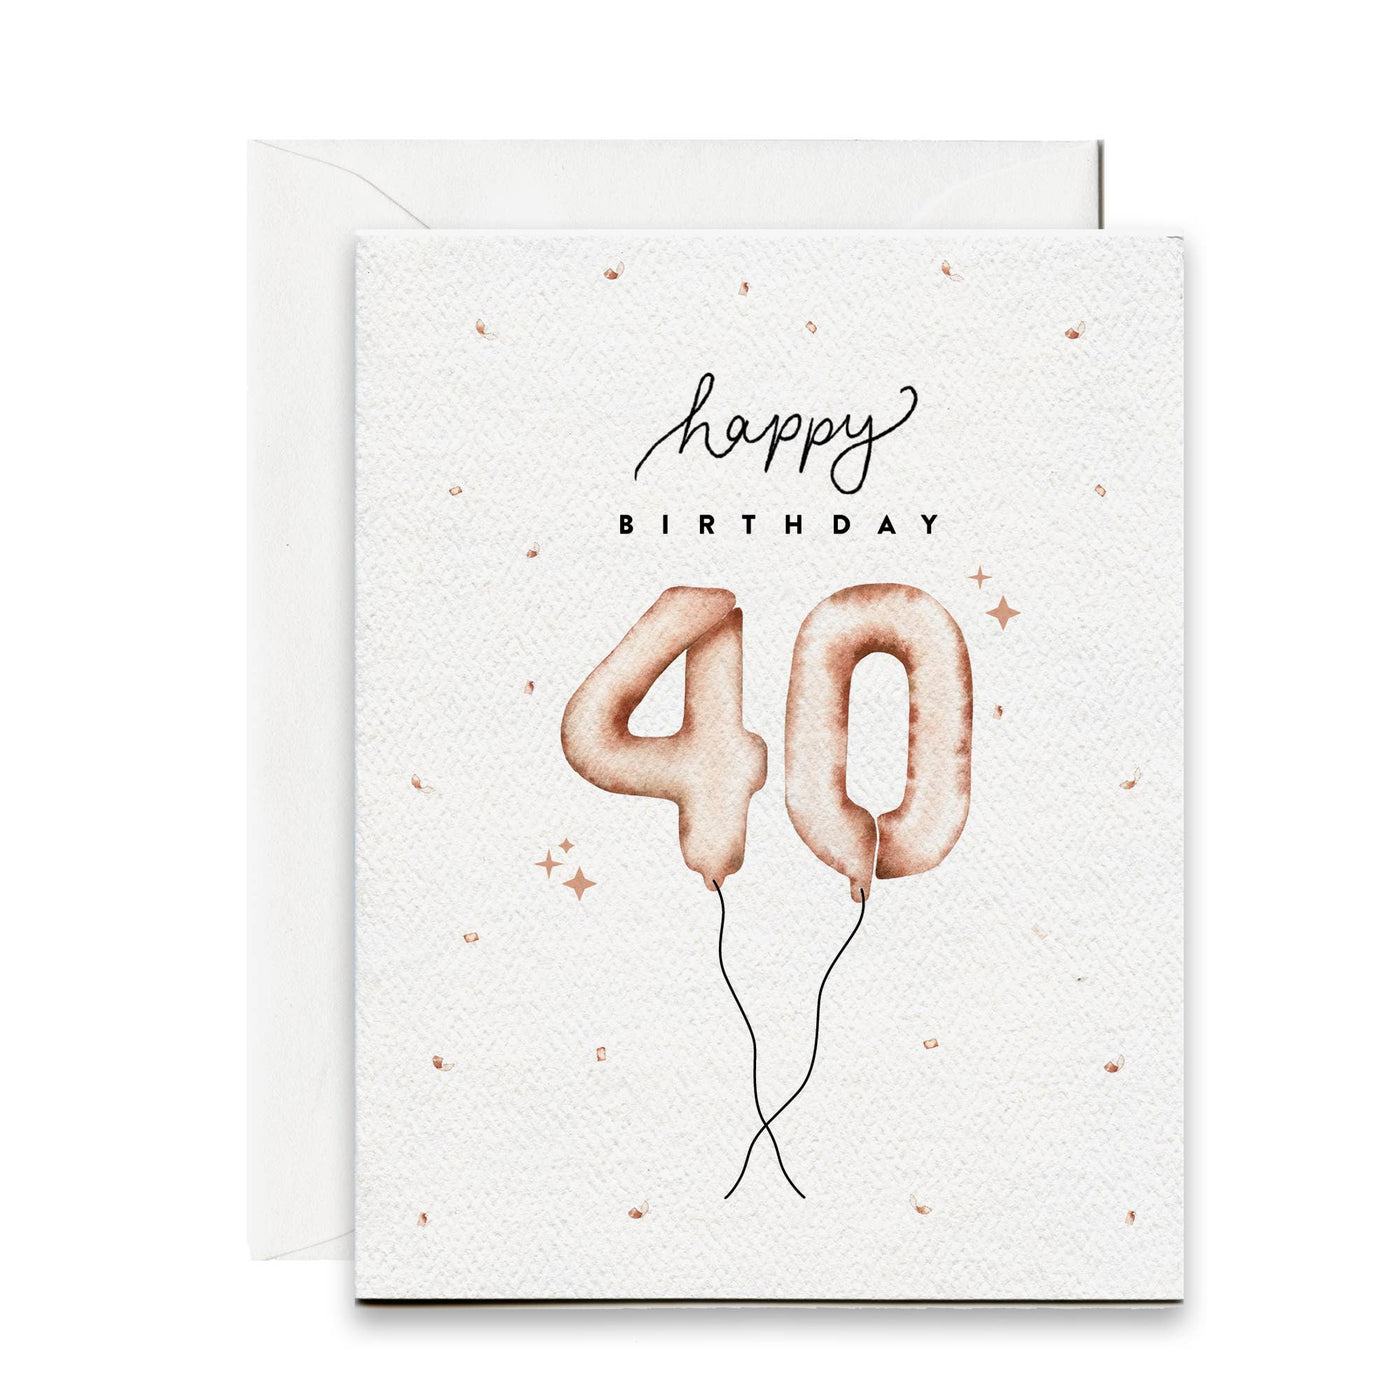 Pip & Cricket - Happy 40th Birthday Balloon Card